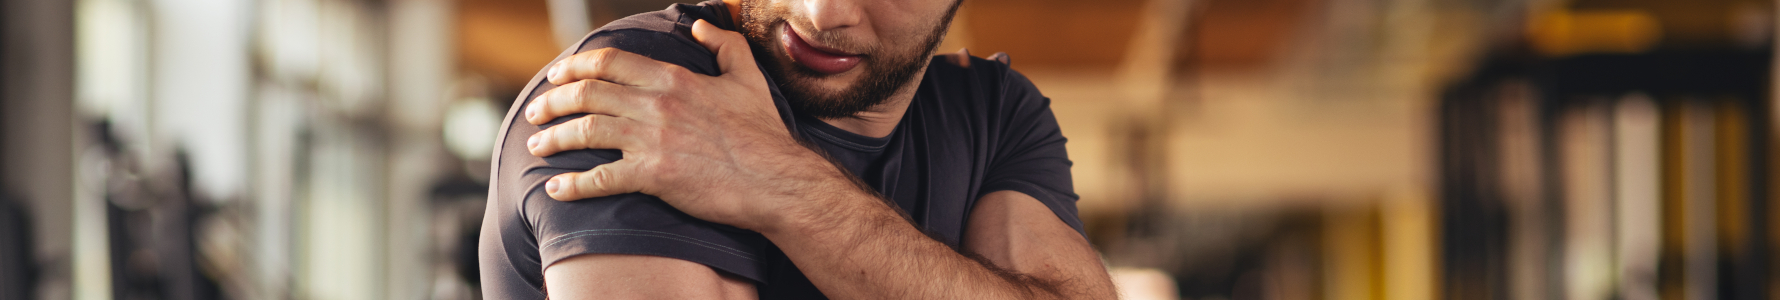 Rabdomioliza - młody mężczyzna trzymający się za mięsień ramienia.